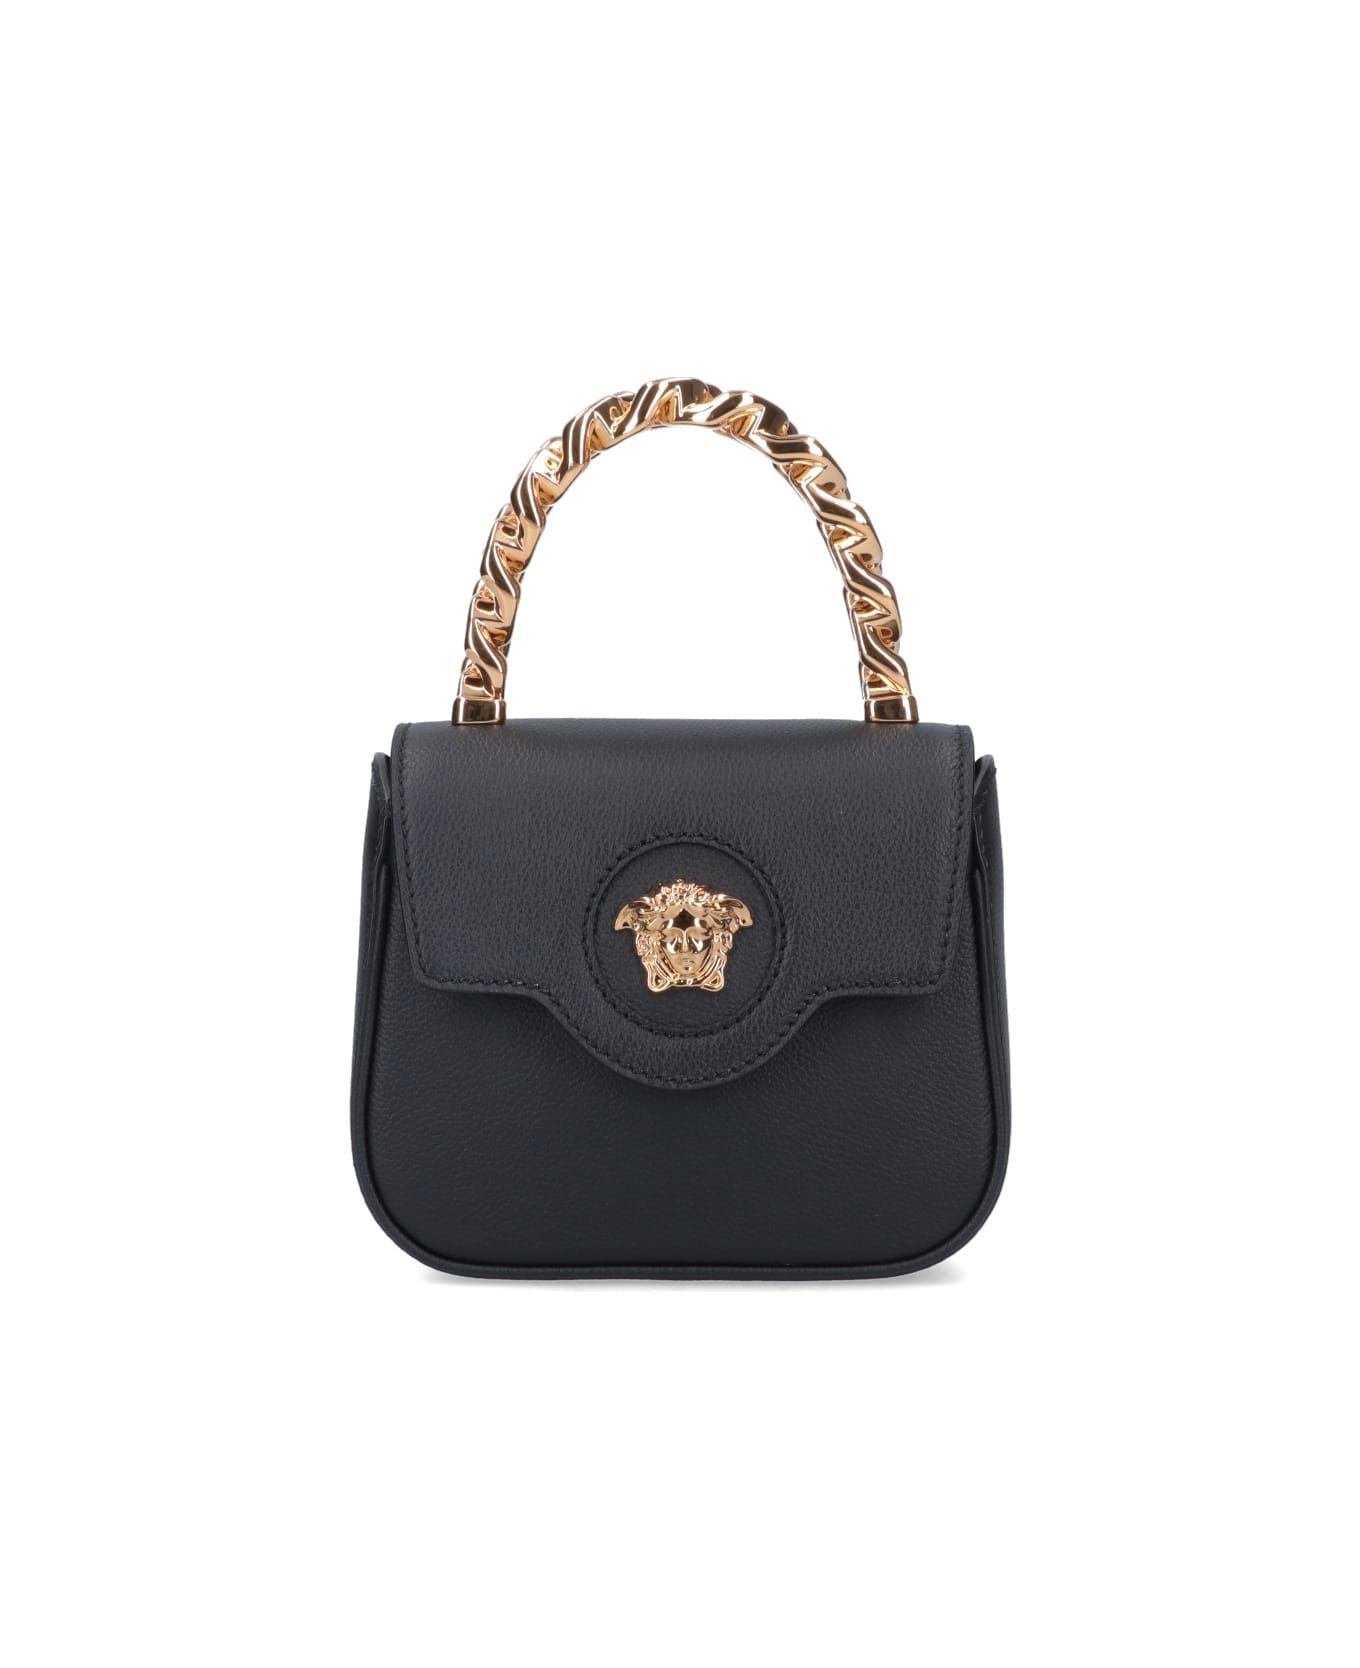 Versace 'the Medusa' Mini Bag - Black  